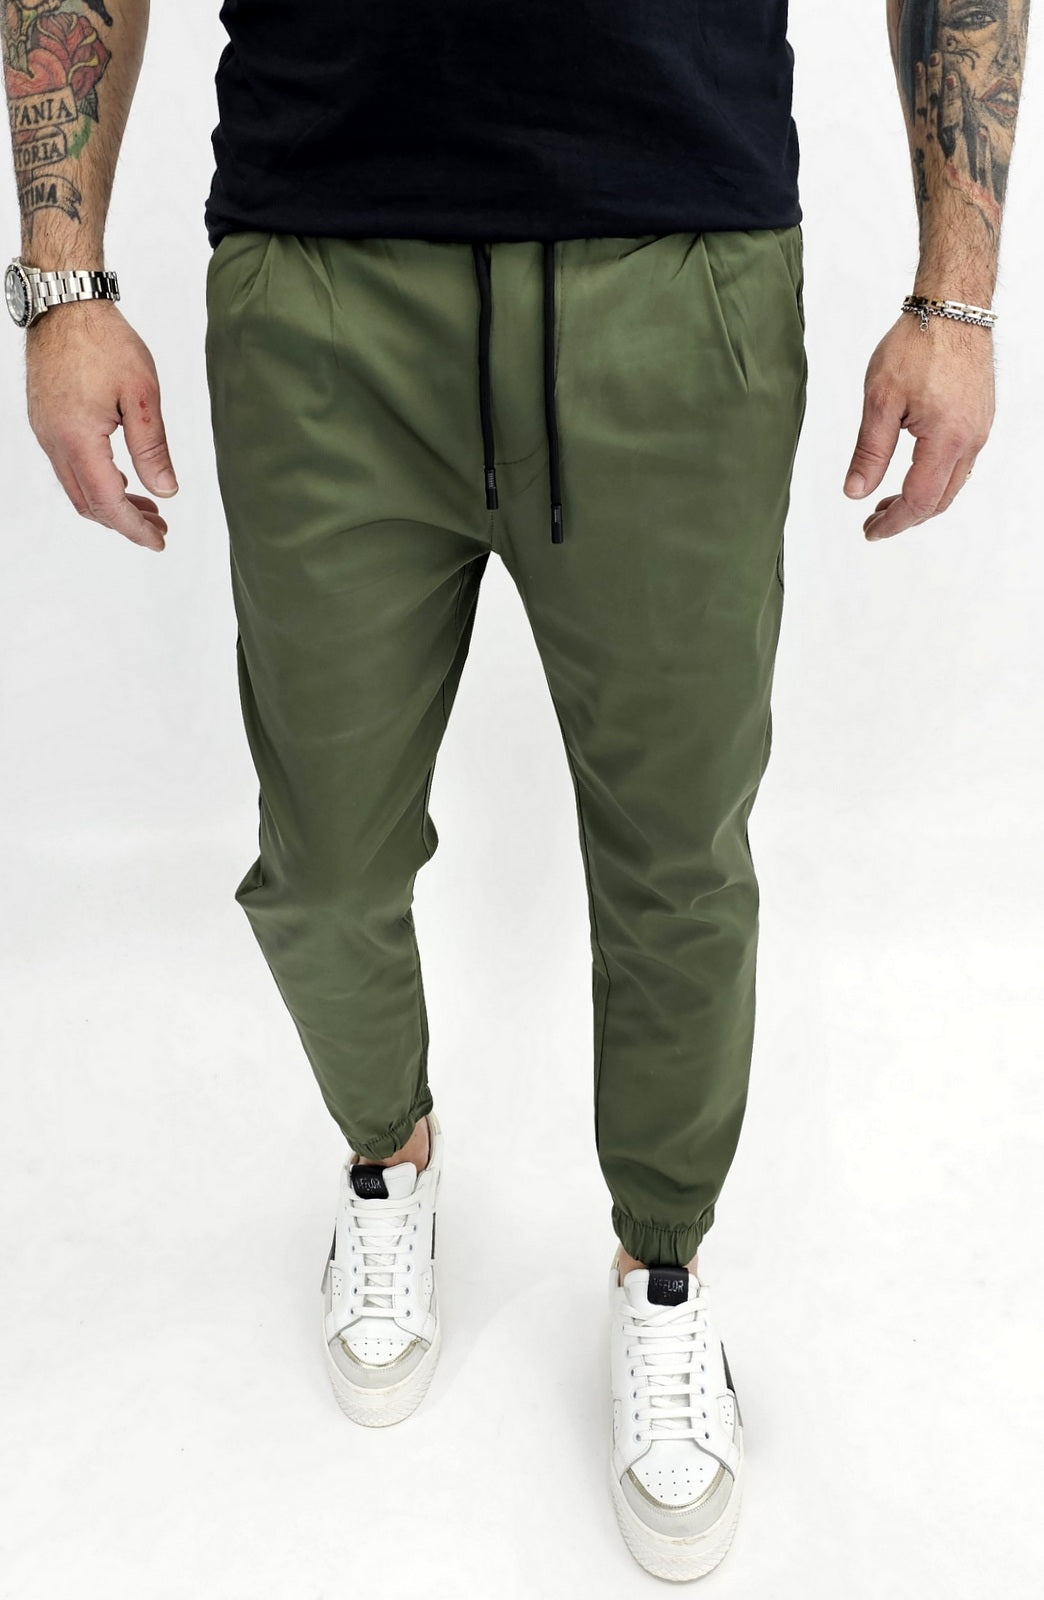 Pantalone Uomo Cotone Elastico Capri Tasche Americane Molla Caviglie 5 colori